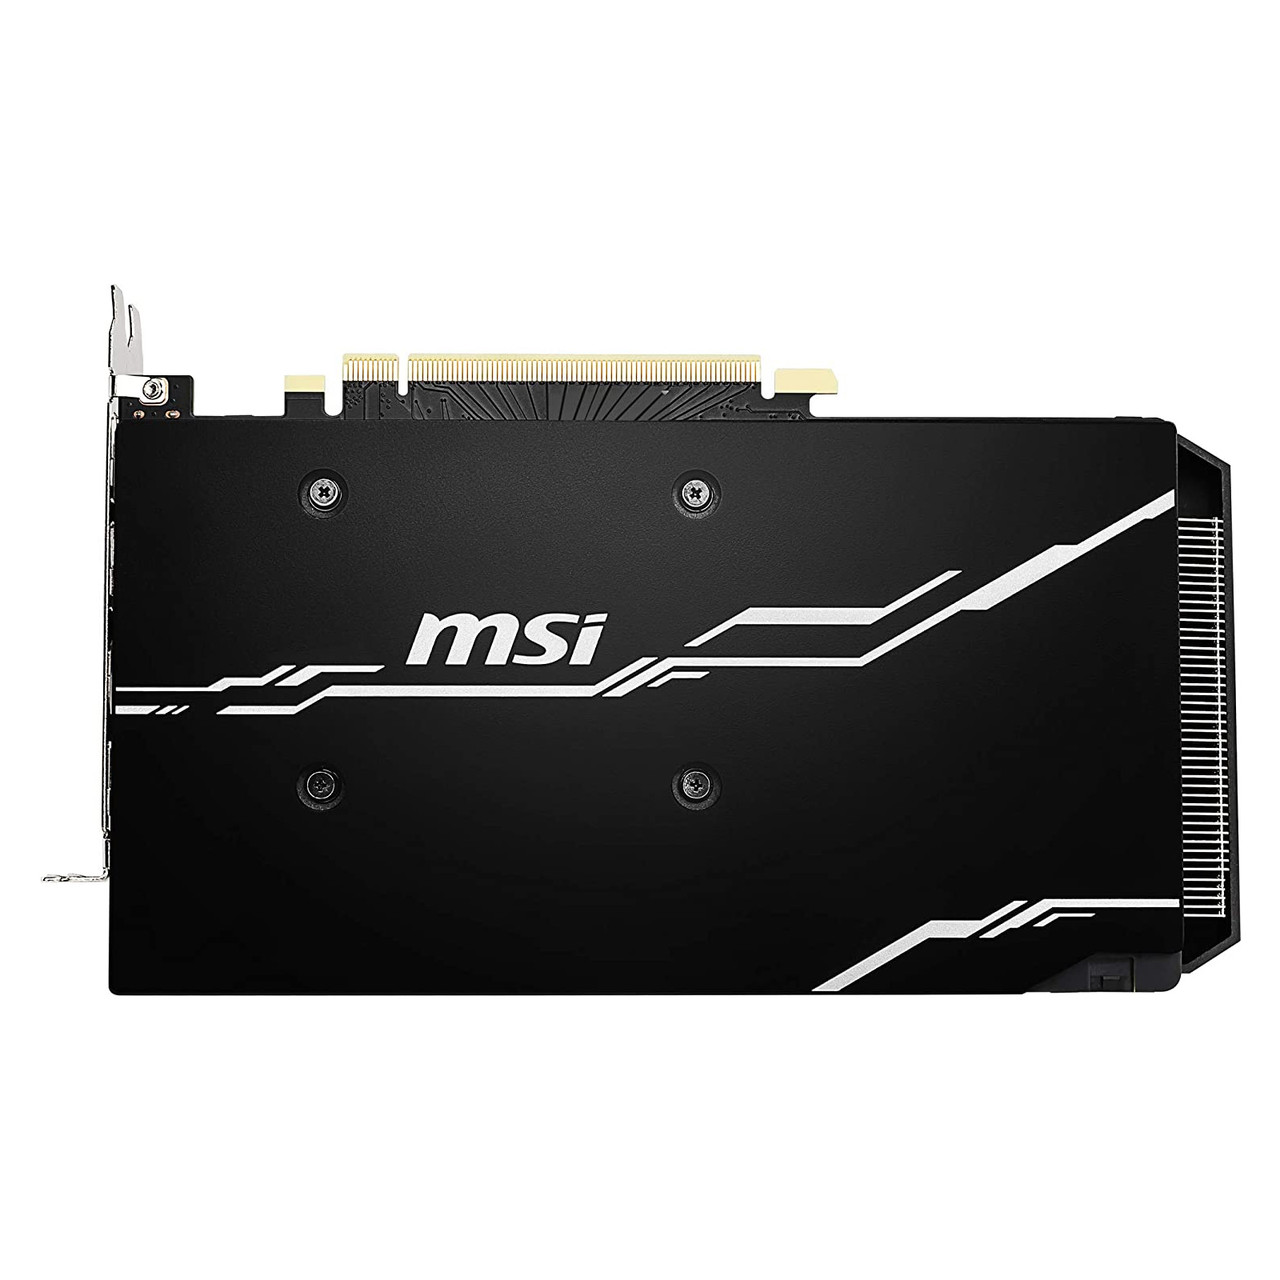 MSI RTX 2060 VENTUS GP OC GeForce RTX 2060 6GB GDDR6 PCI Express 3.0 x16 Video Card